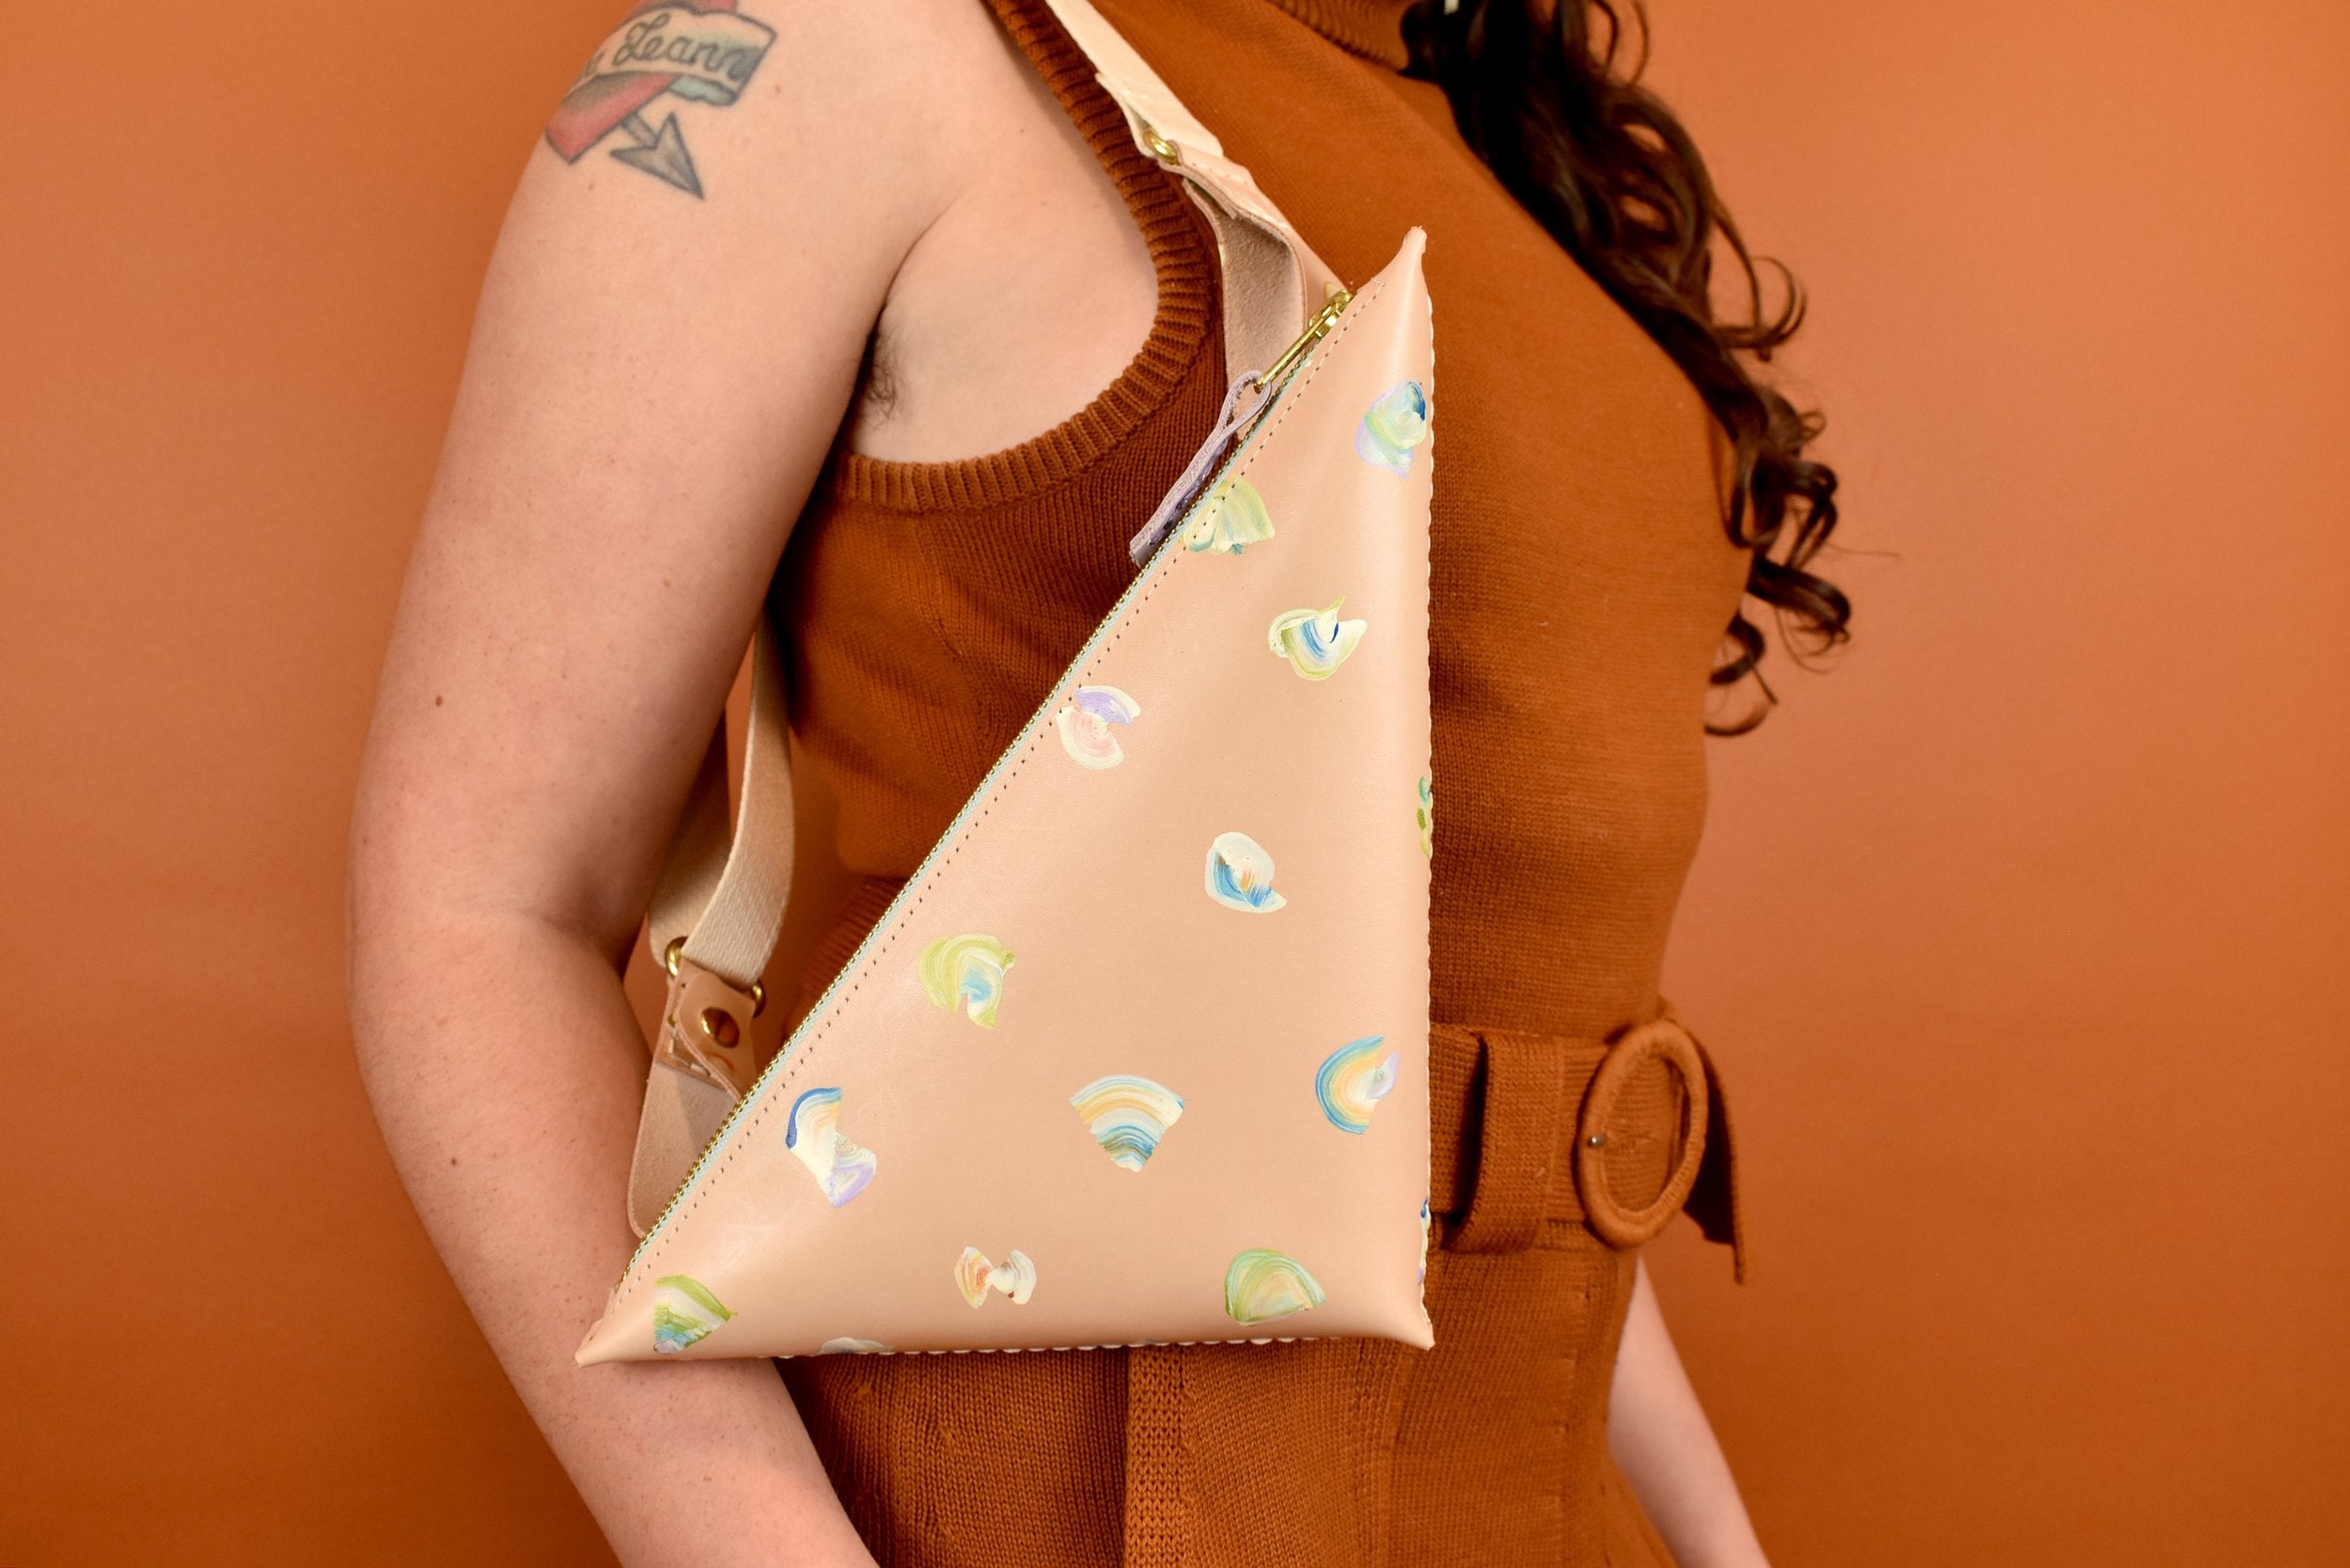 V chrome style Sling bag/Hand bag/Purse,V design in golden chrome